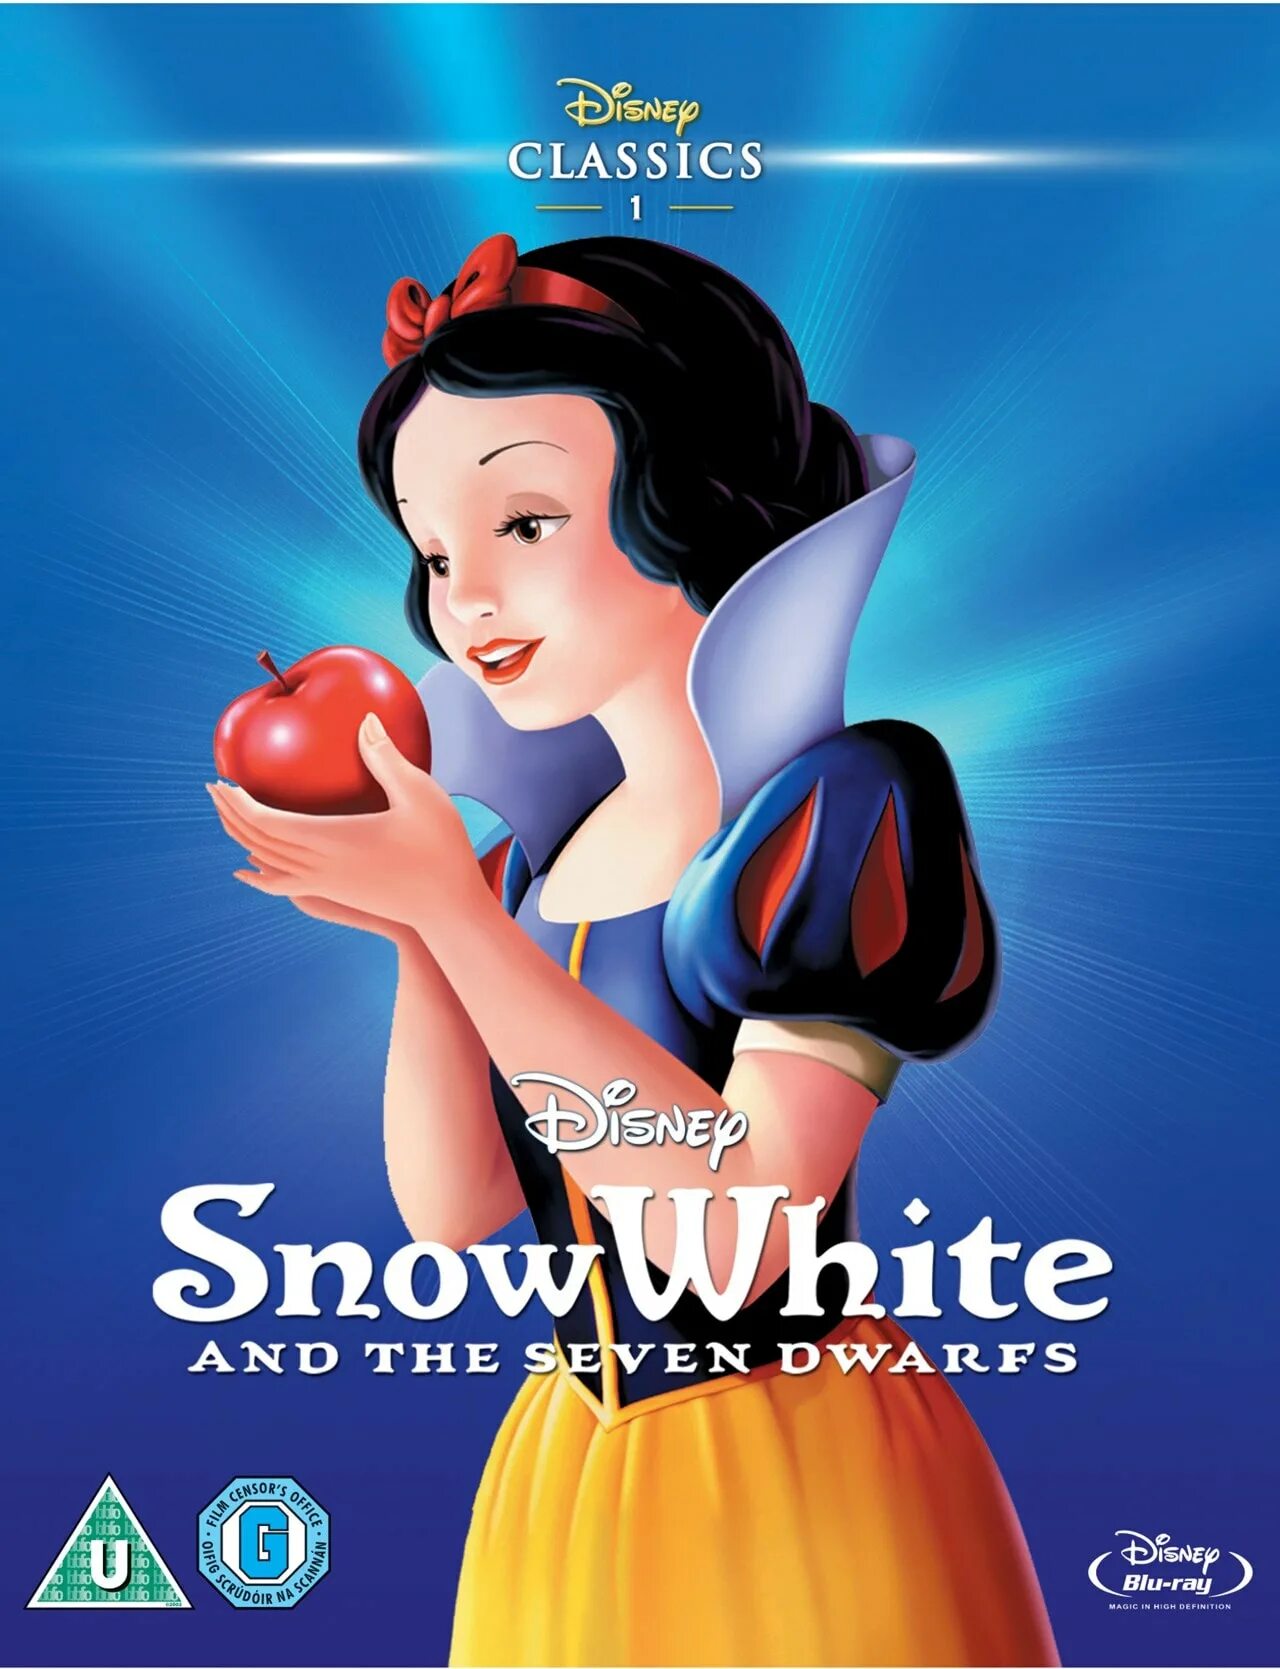 Белоснежка название. Белоснежка Уолт Дисней 1937. Snow White and the Seven Dwarfs 1937 Blu ray. Белоснежка и семь гномов (1937) обложка. Белоснежка и 7 гномов Уолт Дисней.